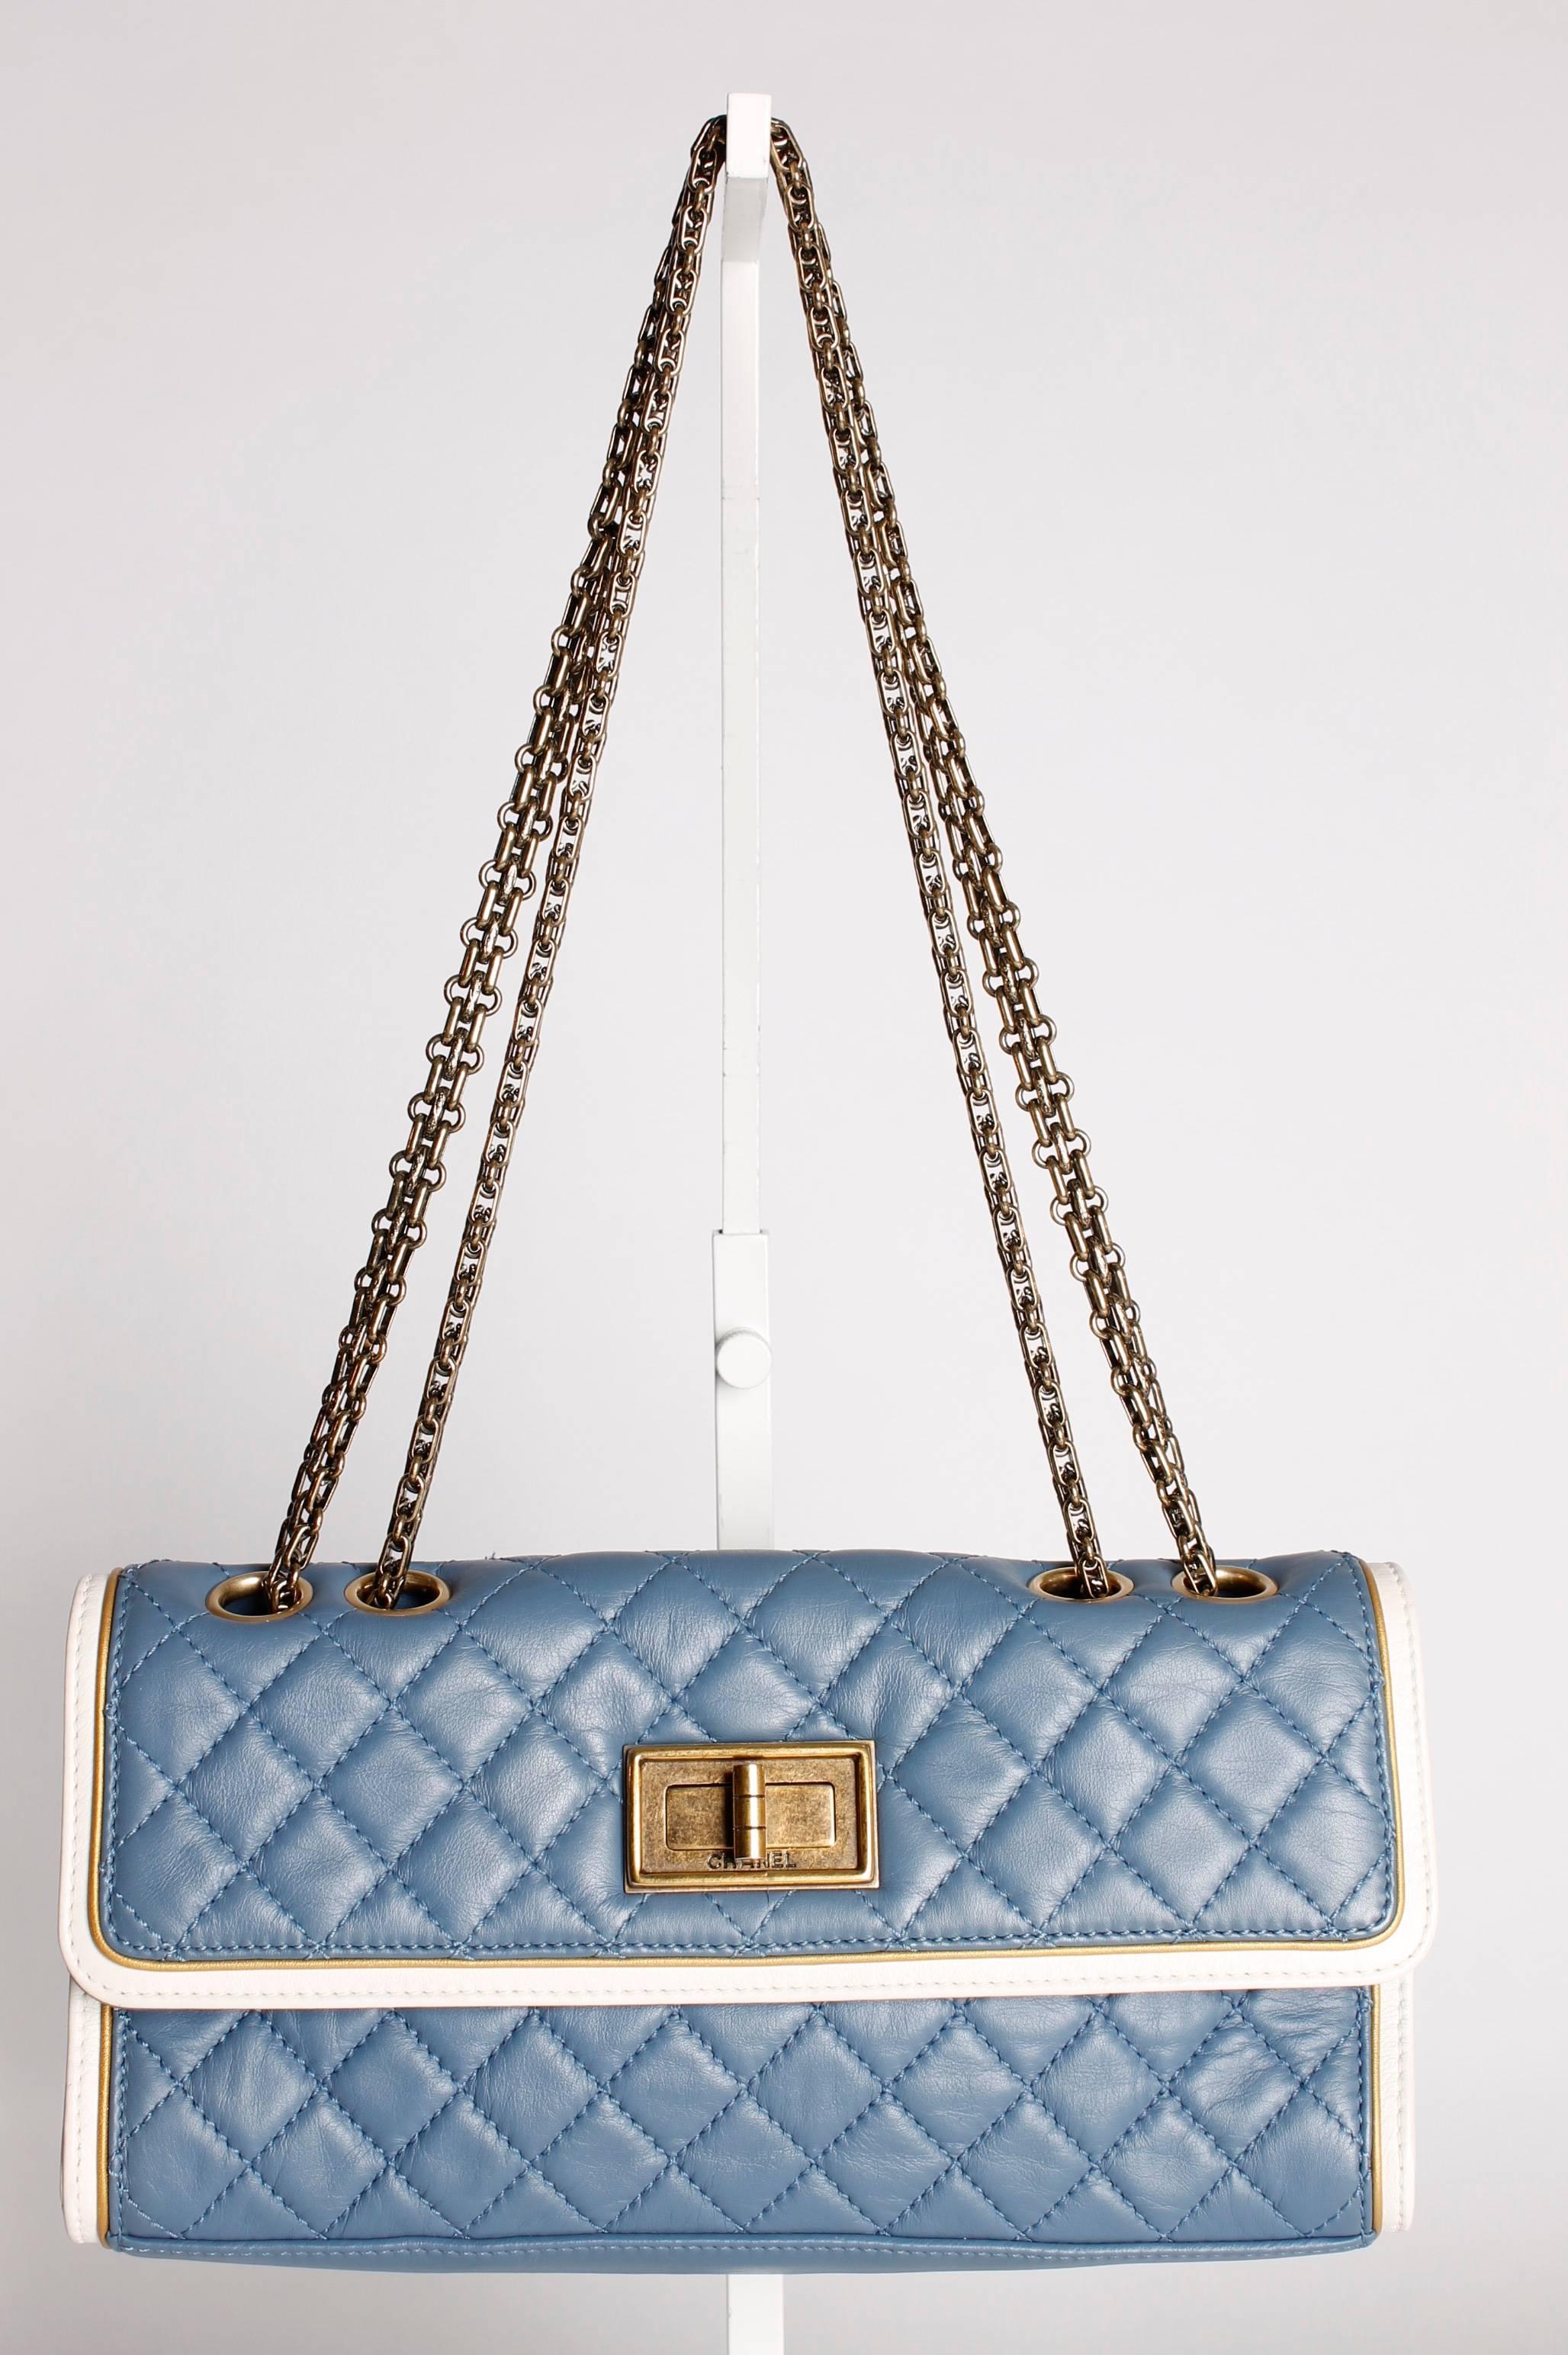 Women's Chanel Baguette Bag - light blue/off-white/bronze